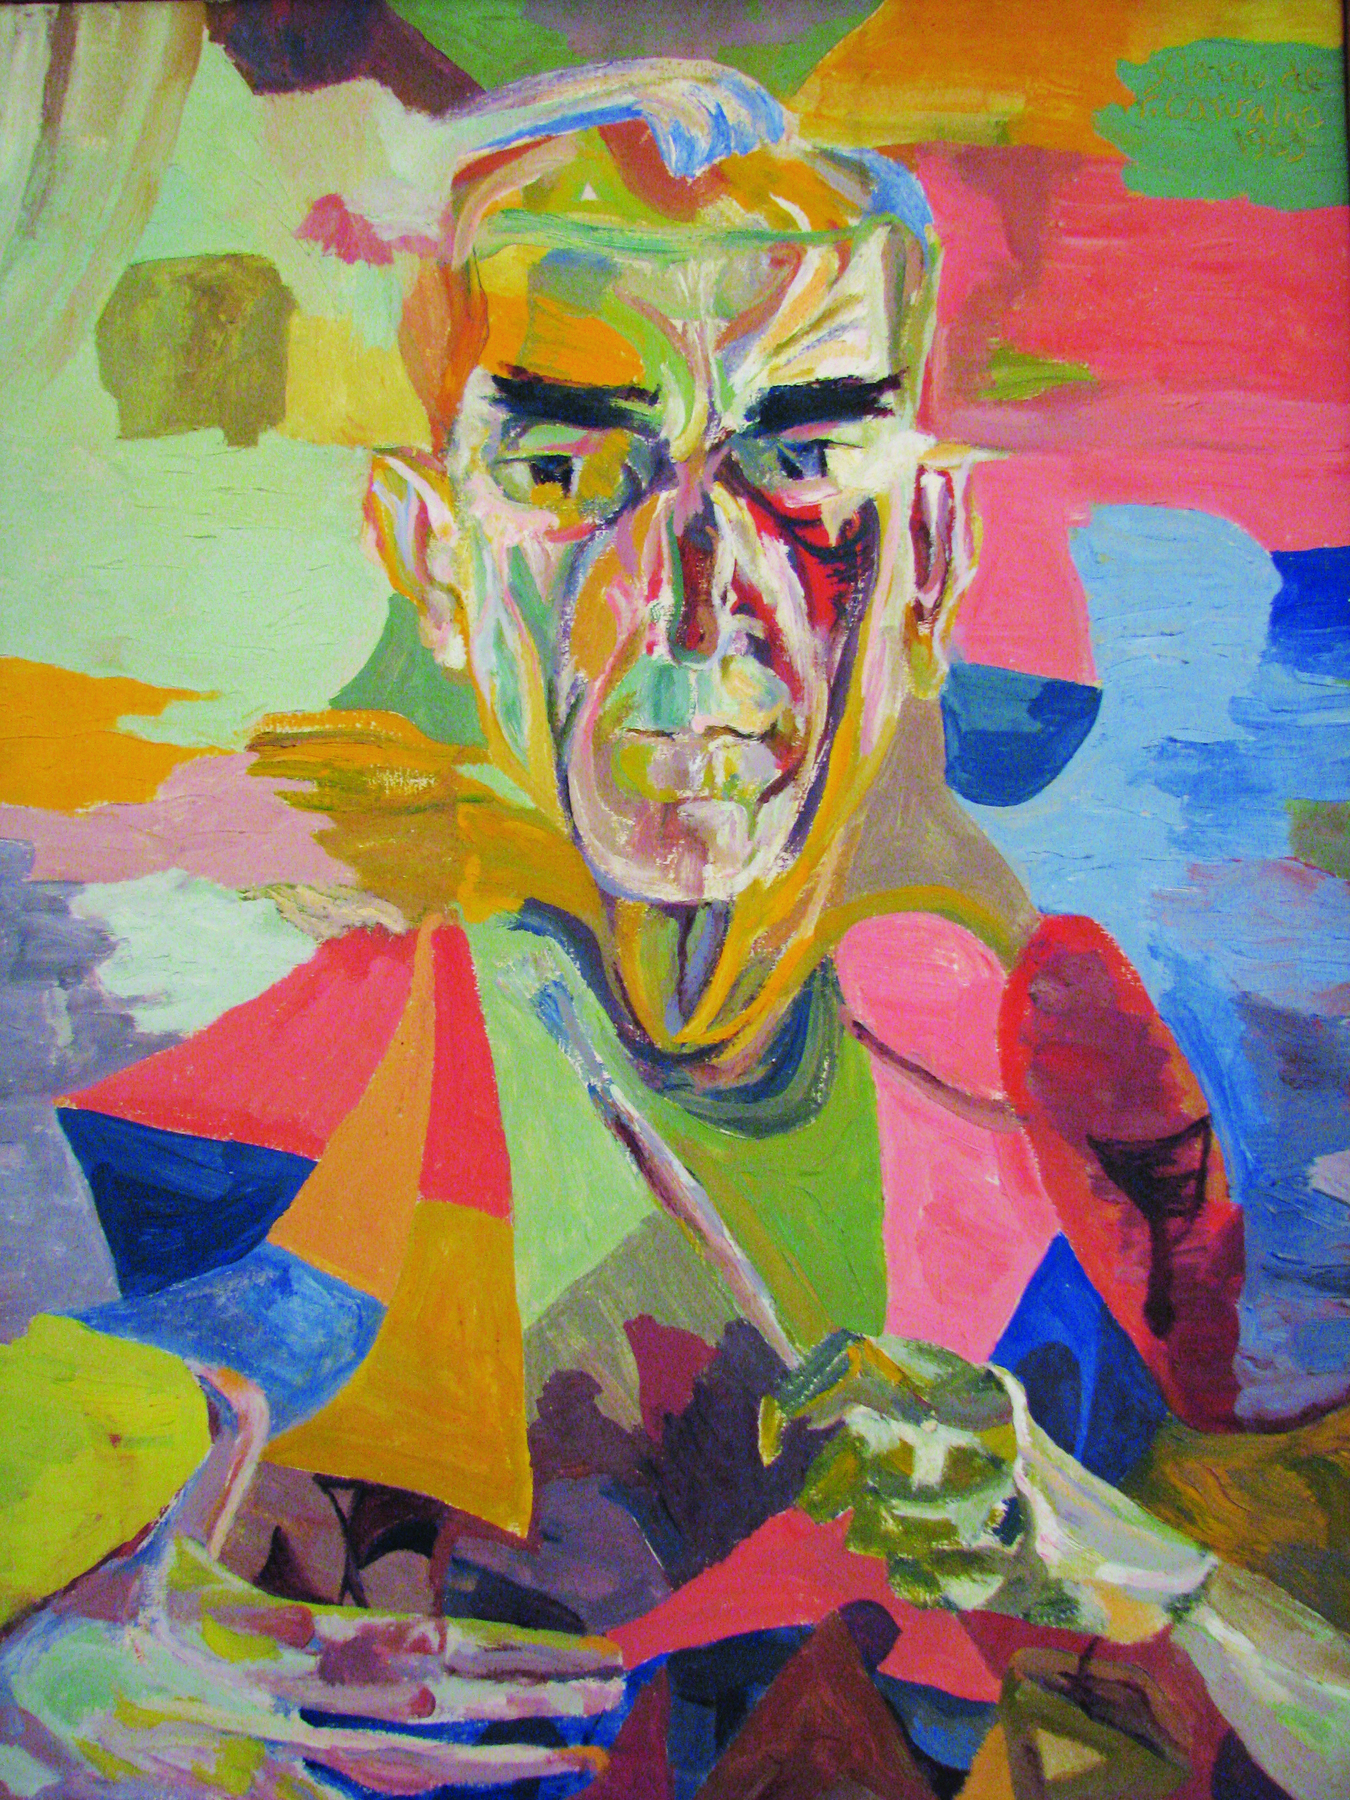 Pintura. Retrato de um homem segurando um pincel na mão esquerda. O quadro explora a utilização de muitas cores, sem grande preocupação com as linhas e as formas para a representação da figura. As cores usadas no homem e no fundo da tela se mesclam.